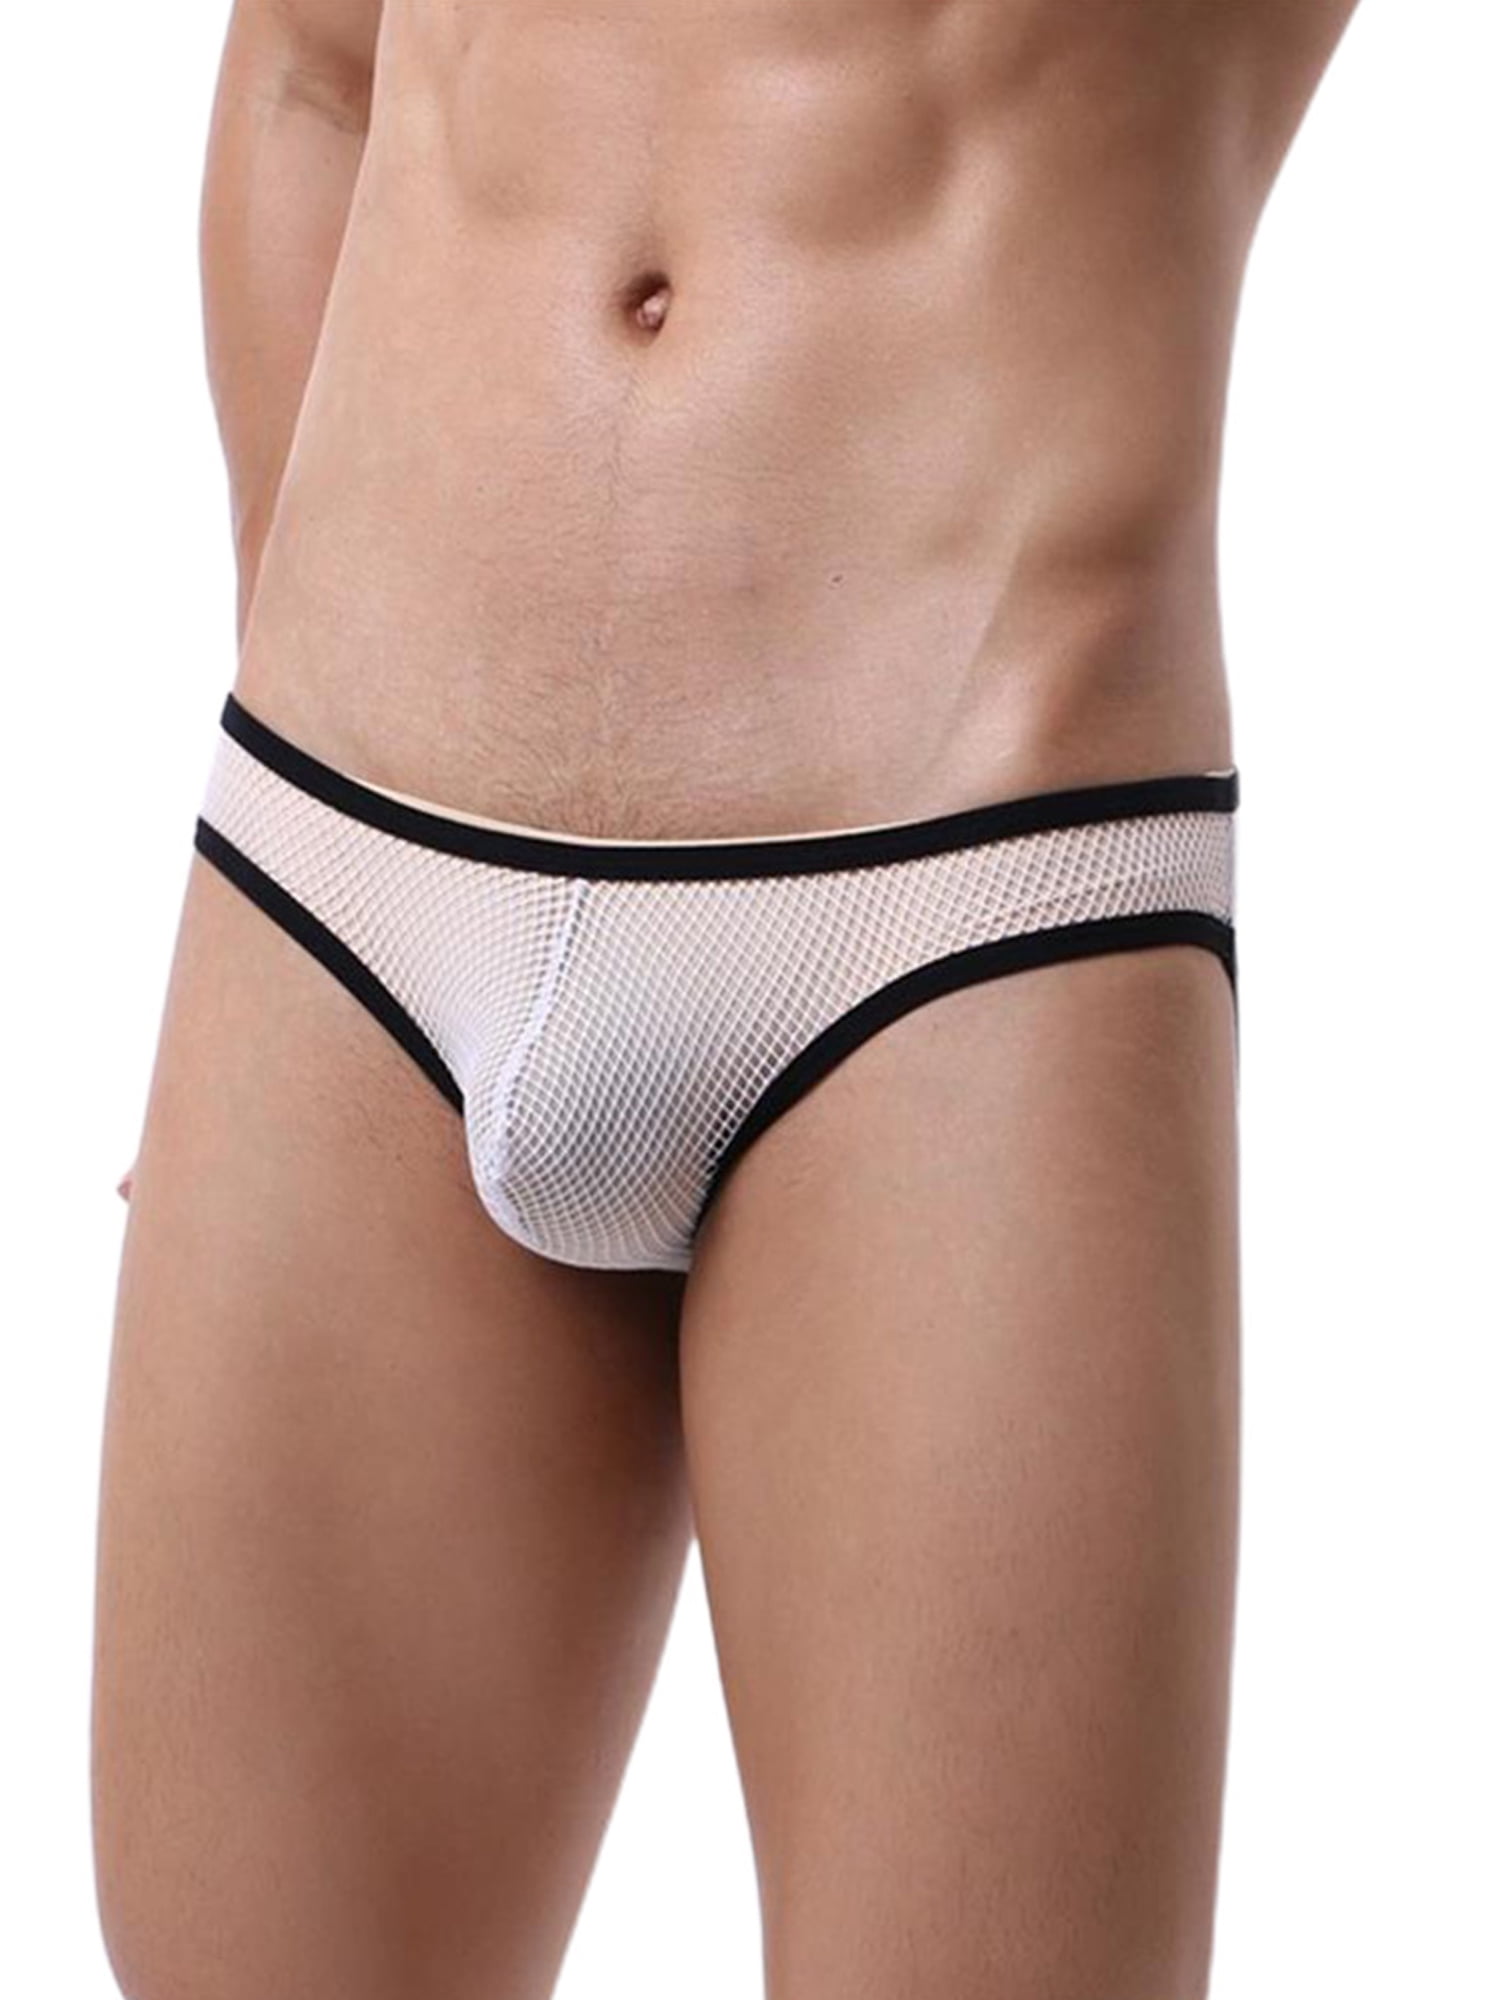 Men Underwear See-through Mesh Bikini T-back Breathable Bulge Pouch Thong Briefs